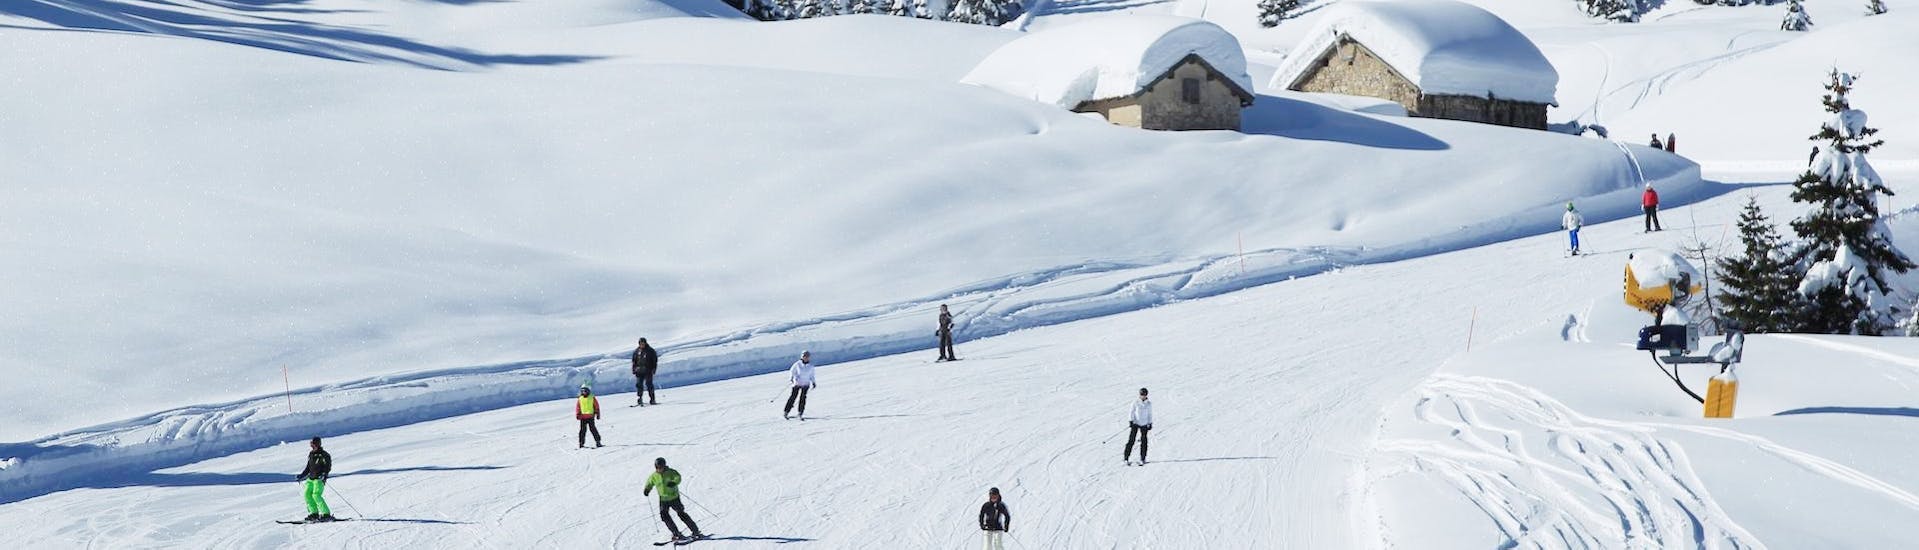 Pistes waar de privé skilessen voor volwassenen (vanaf 15 jaar) voor alle niveaus met Scuola Italiana Sci Folgaria-Fondo Grande plaatsvinden.